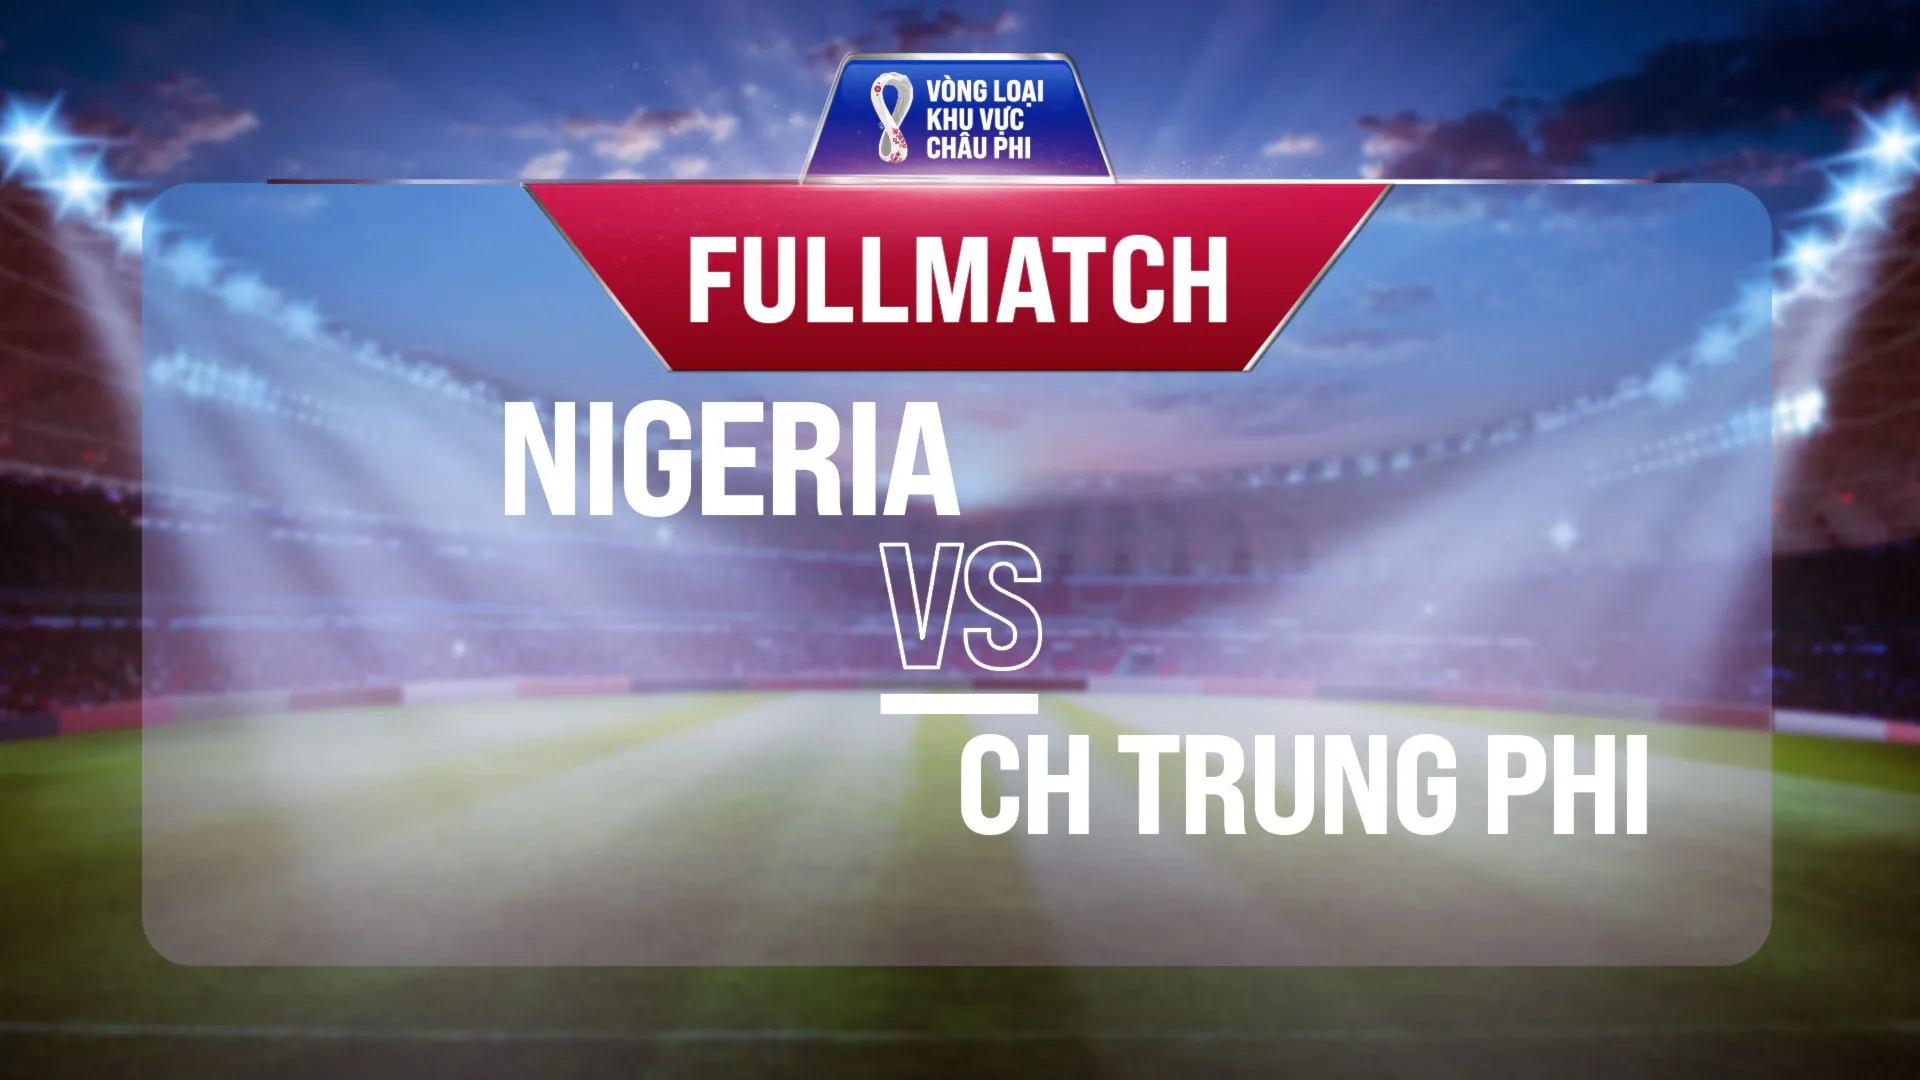 Full match Nigeria vs CH Trung Phi (Lượt trận 3 Vòng Loại thứ 2 World Cup 2022 - Khu vực châu Phi)